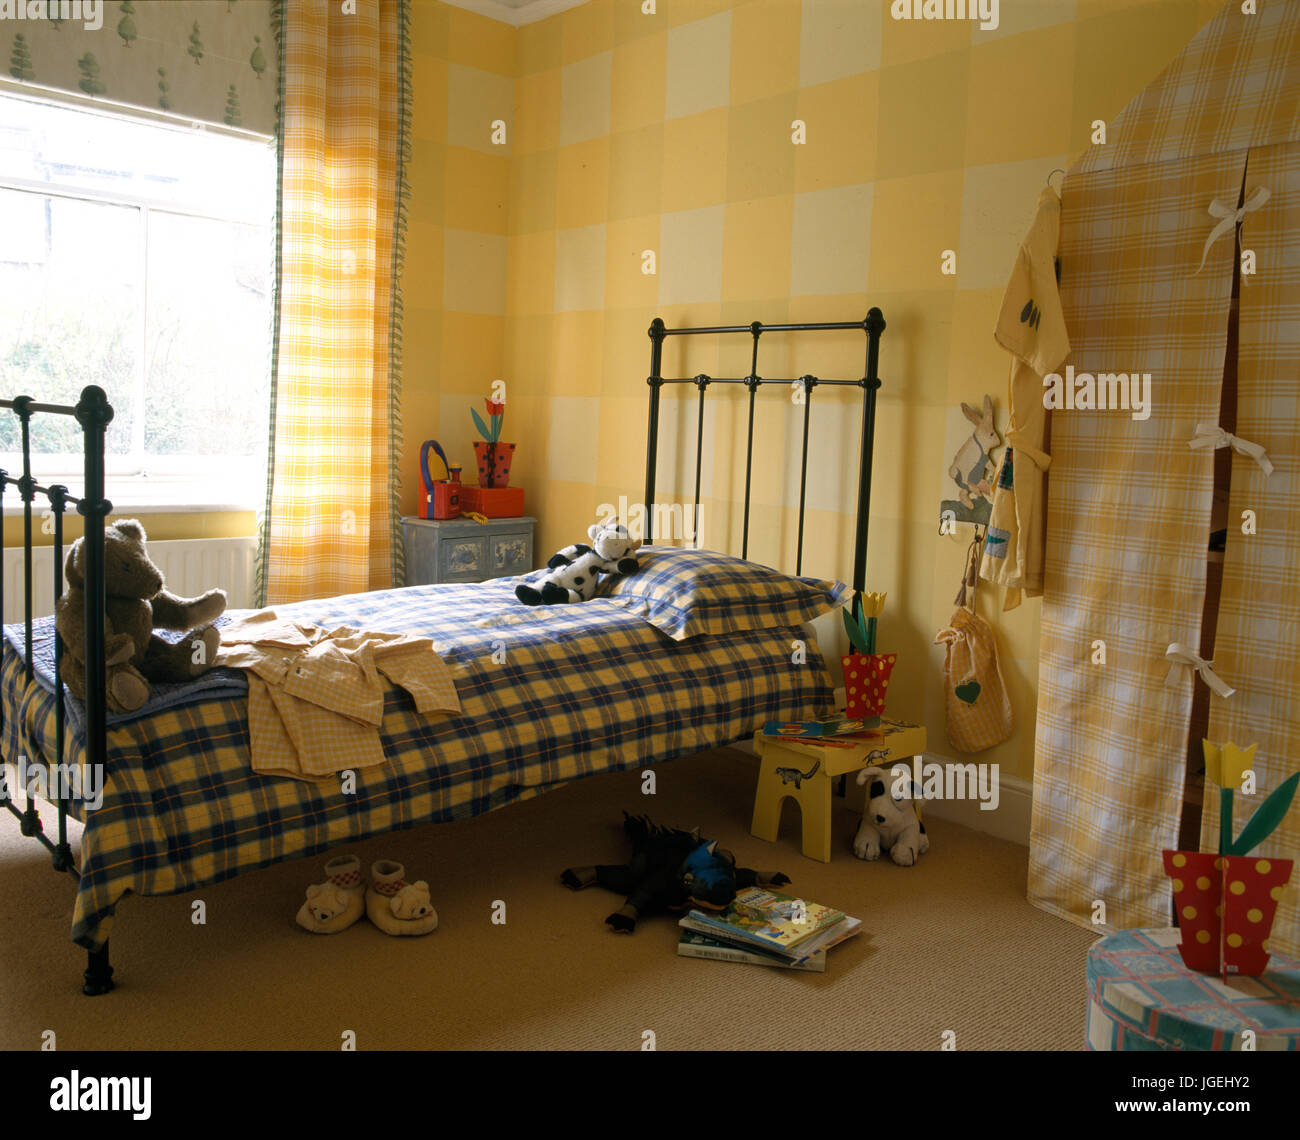 Chambre d'enfant avec mur à carreaux et couvre-lits Banque D'Images